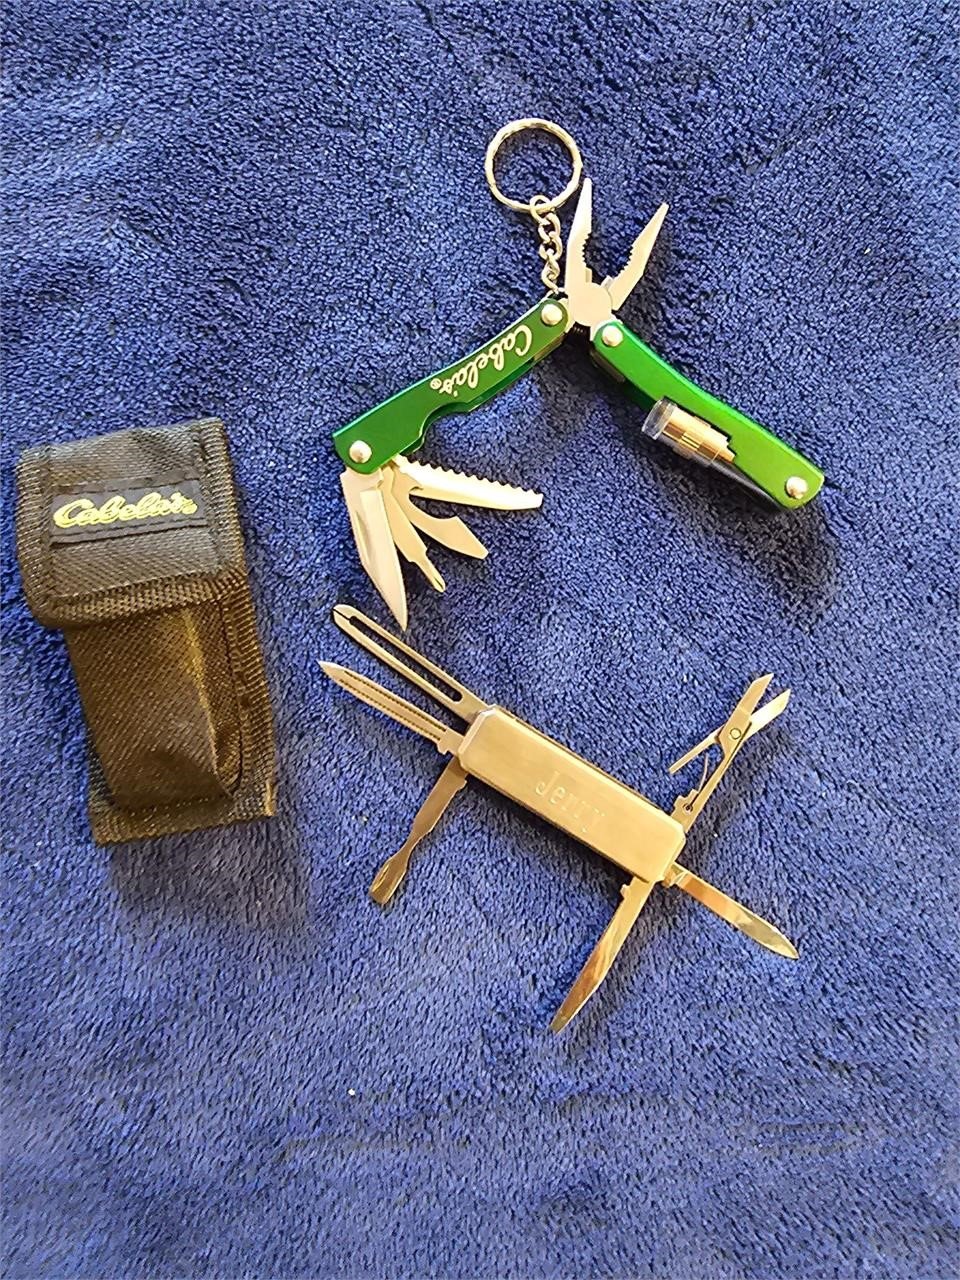 Cabela's Pocket pliers